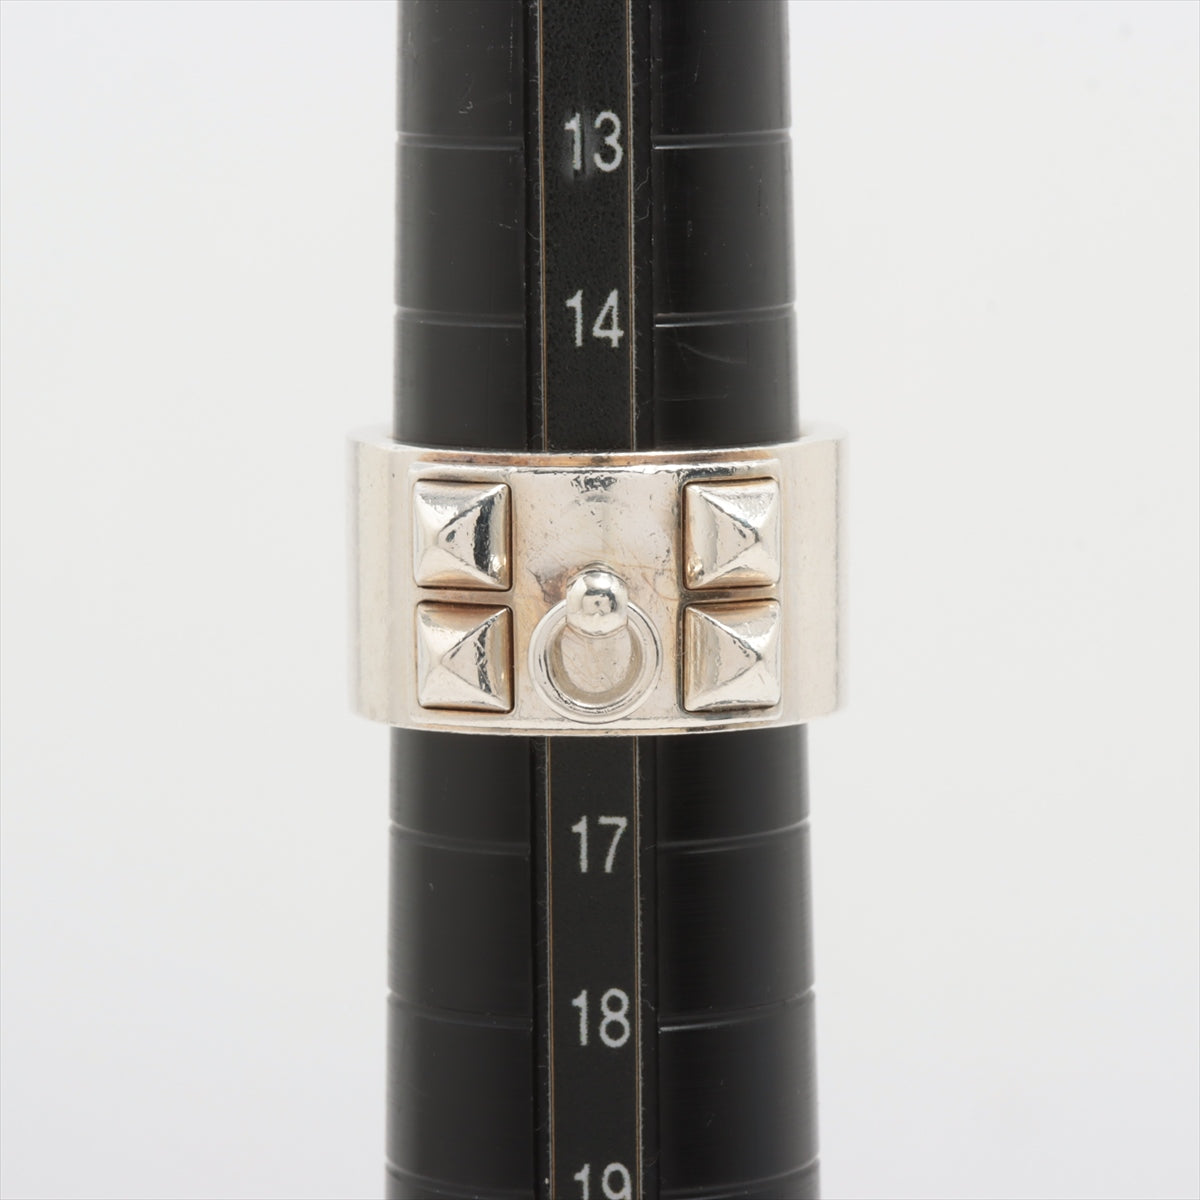 Hermès Collier de Chien rings 56 925 17.6g Silver